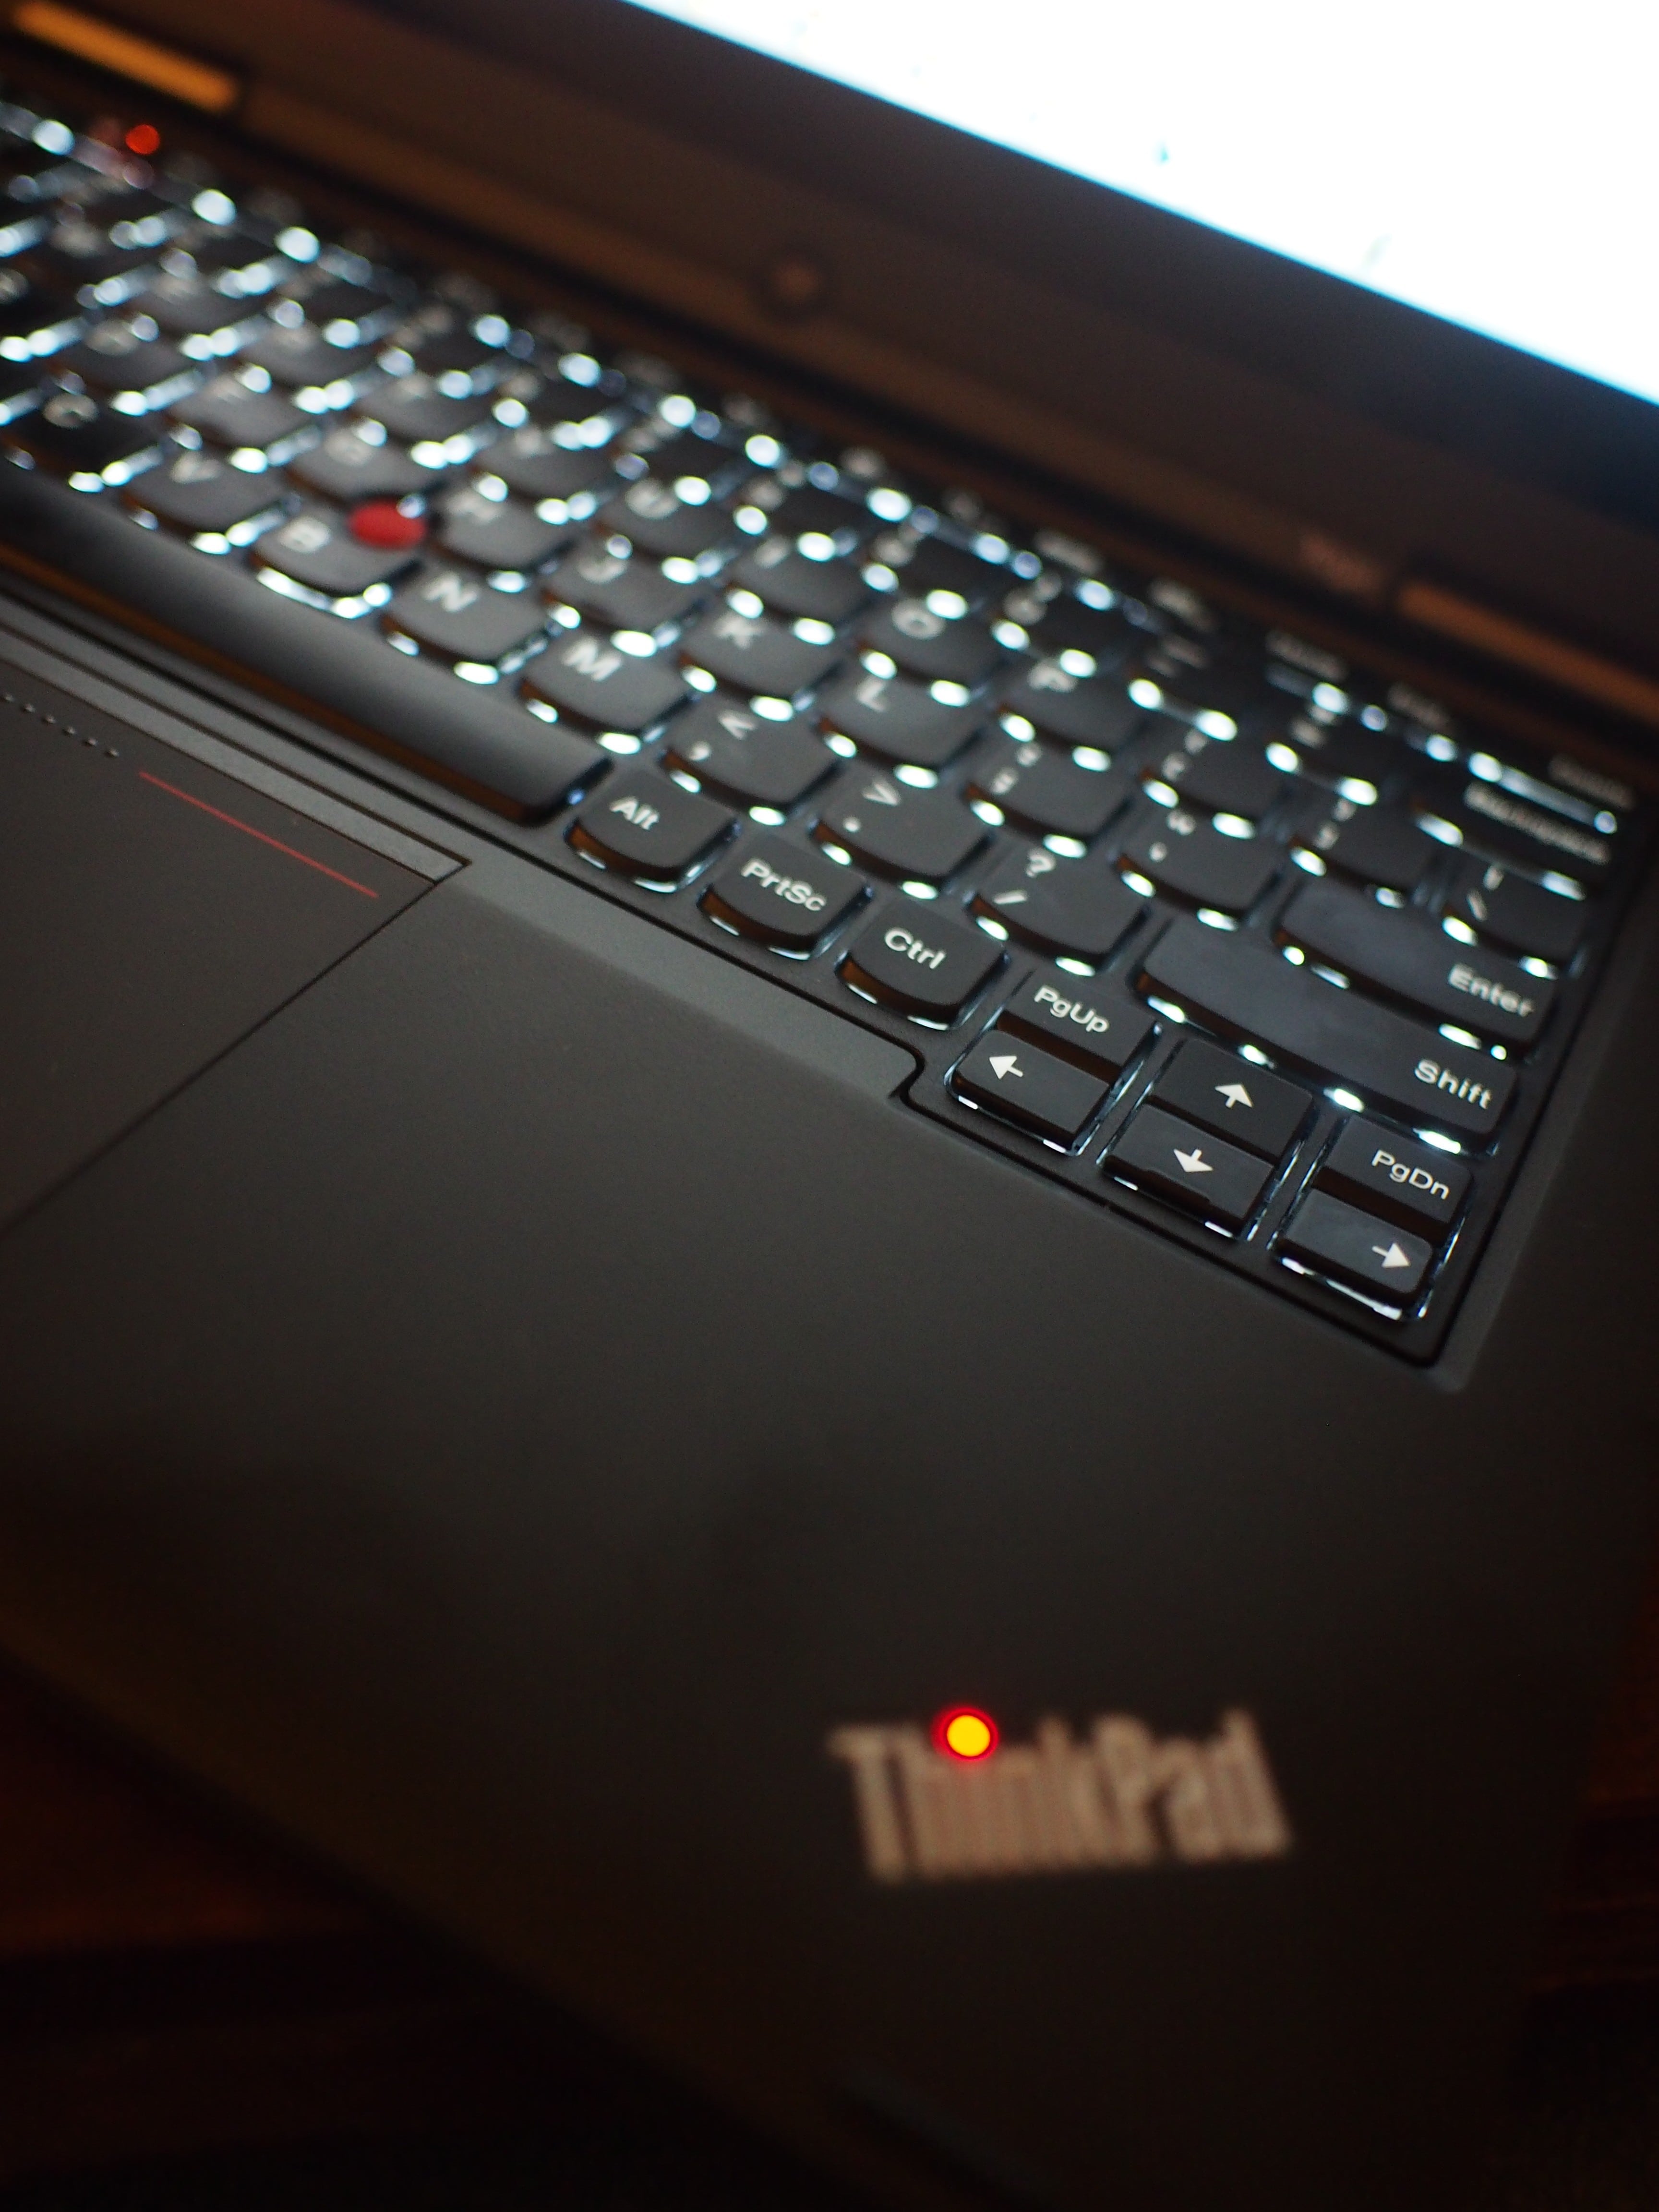 Lenovo ThinkPad Yoga backlit keyboard and red LED